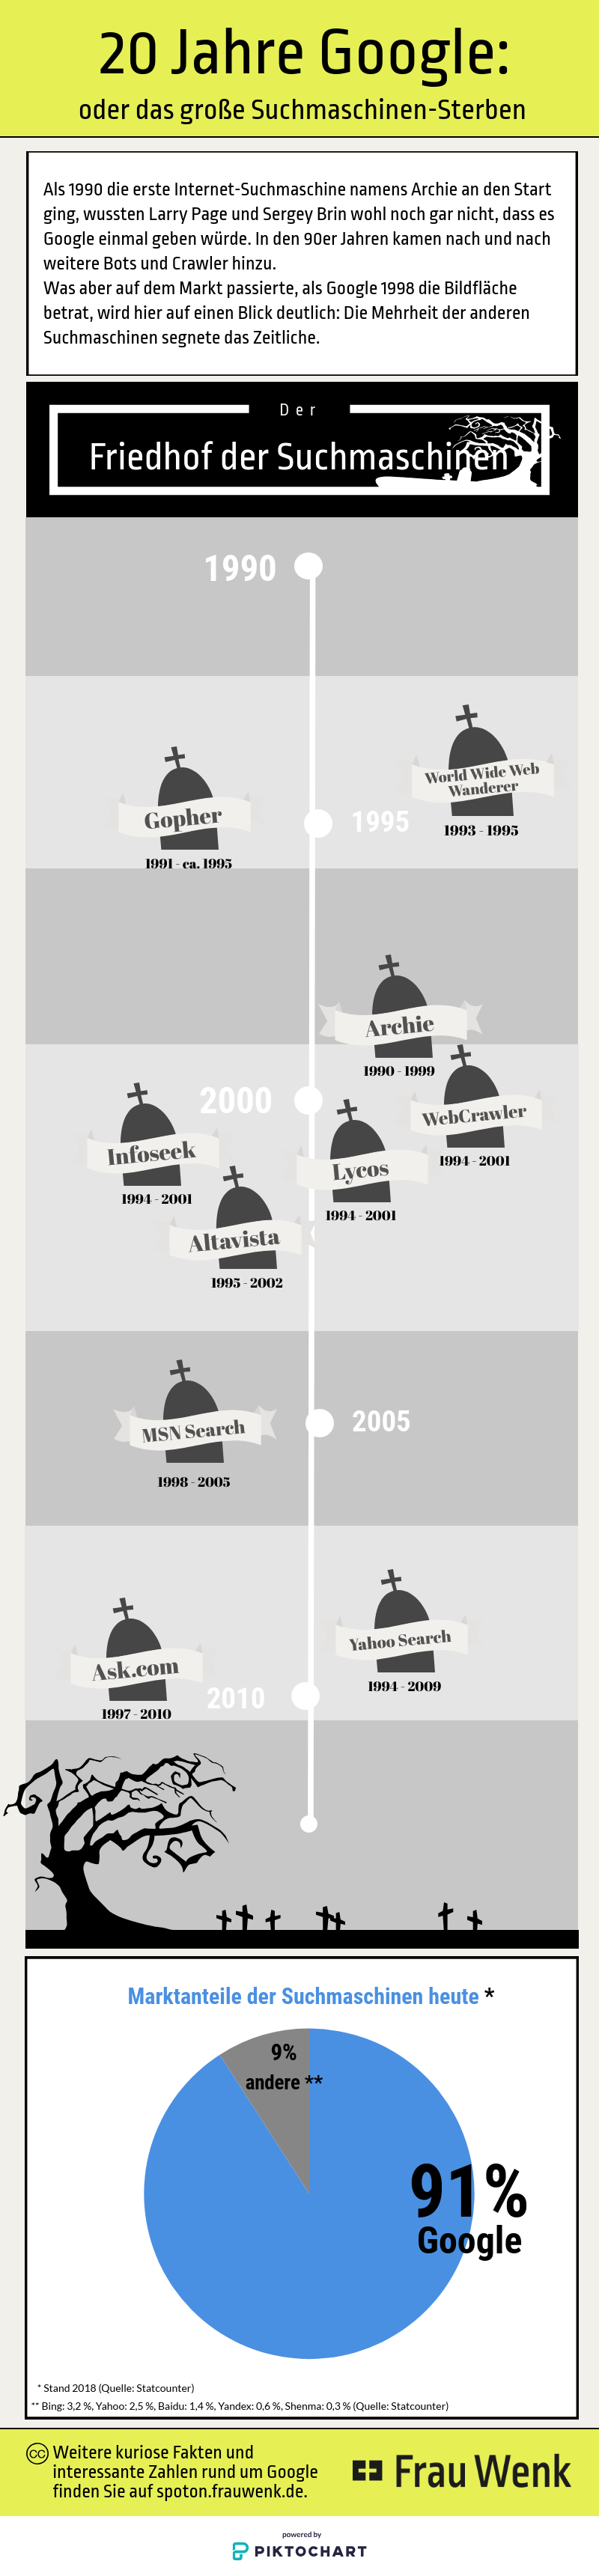 Frau Wenk Infografik Friedhof der Suchmaschinen 20 Jahre Google - 20 Jahre Google